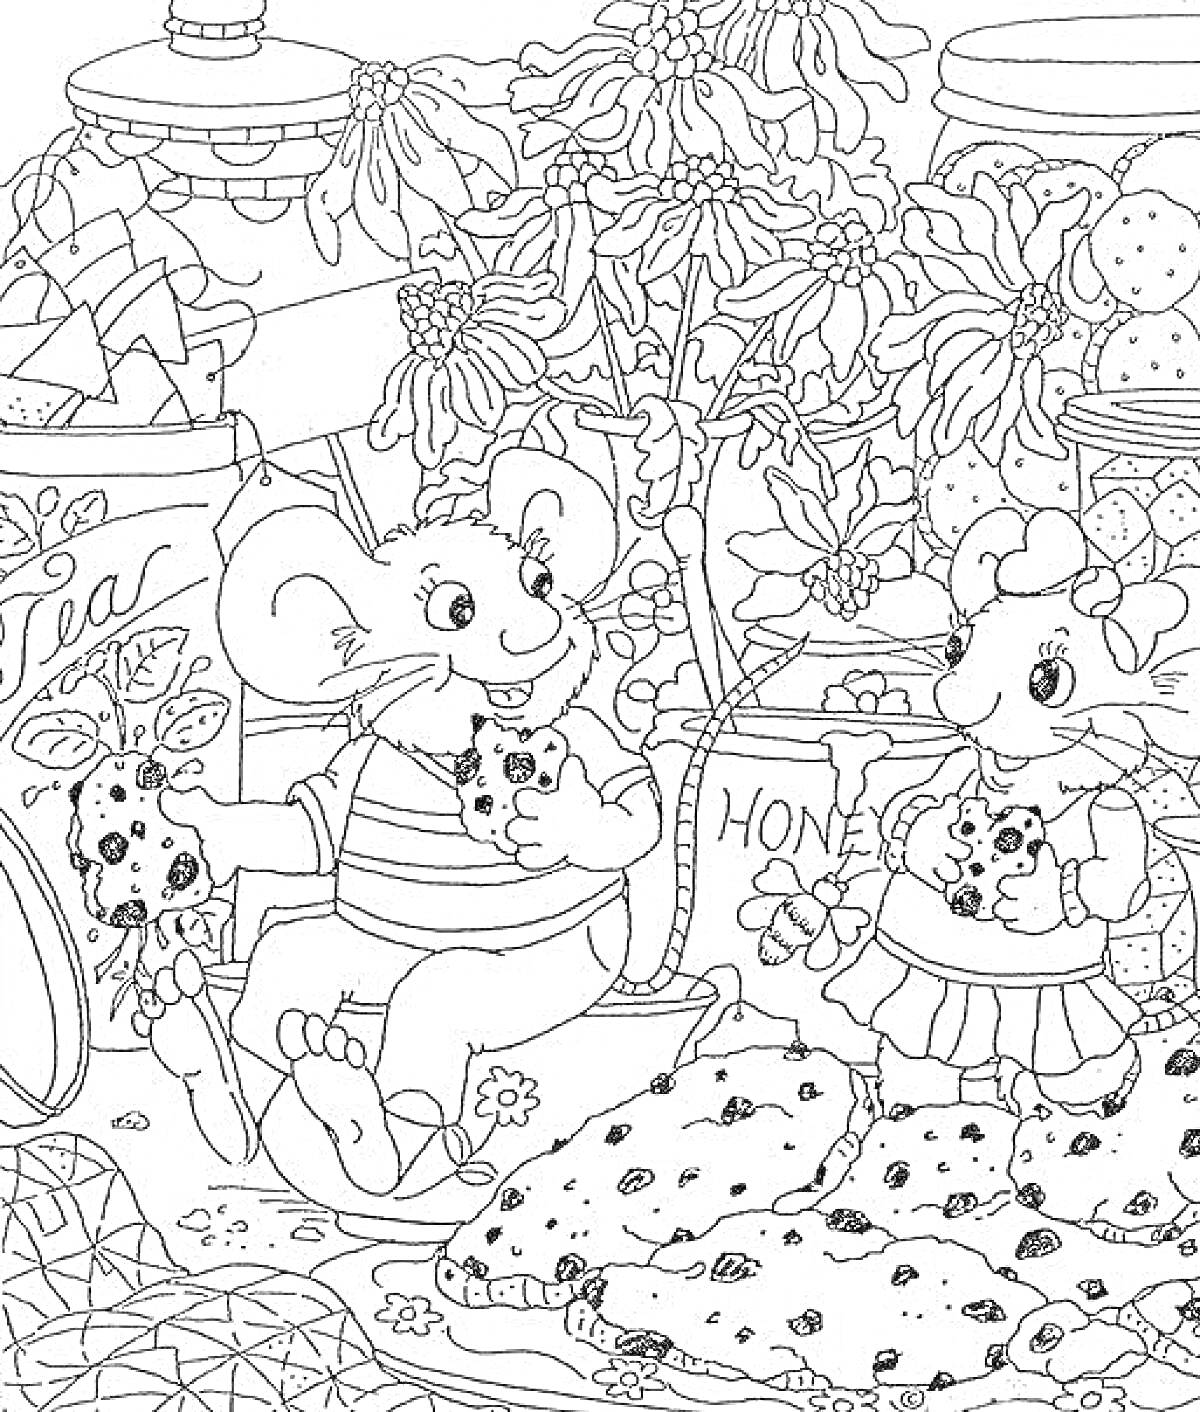 Раскраска Мышки с печеньем в цветущем саду: мышки, чайник, цветы, баночки, упаковка чая, банка мёда, печенье, чашки